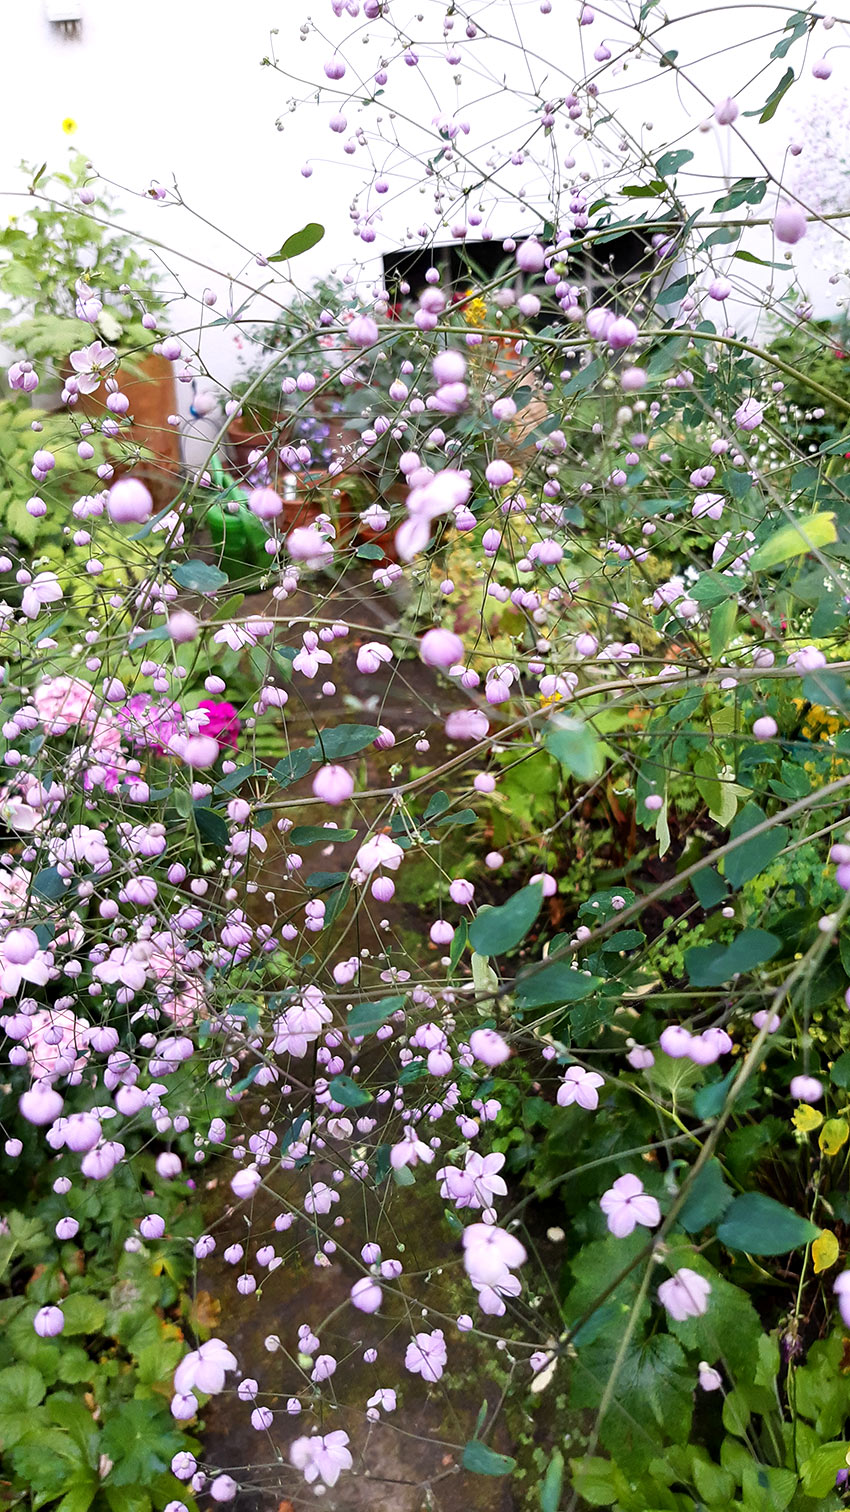 Aufnahme aus einem Garten rosa Blumen und Sträucher